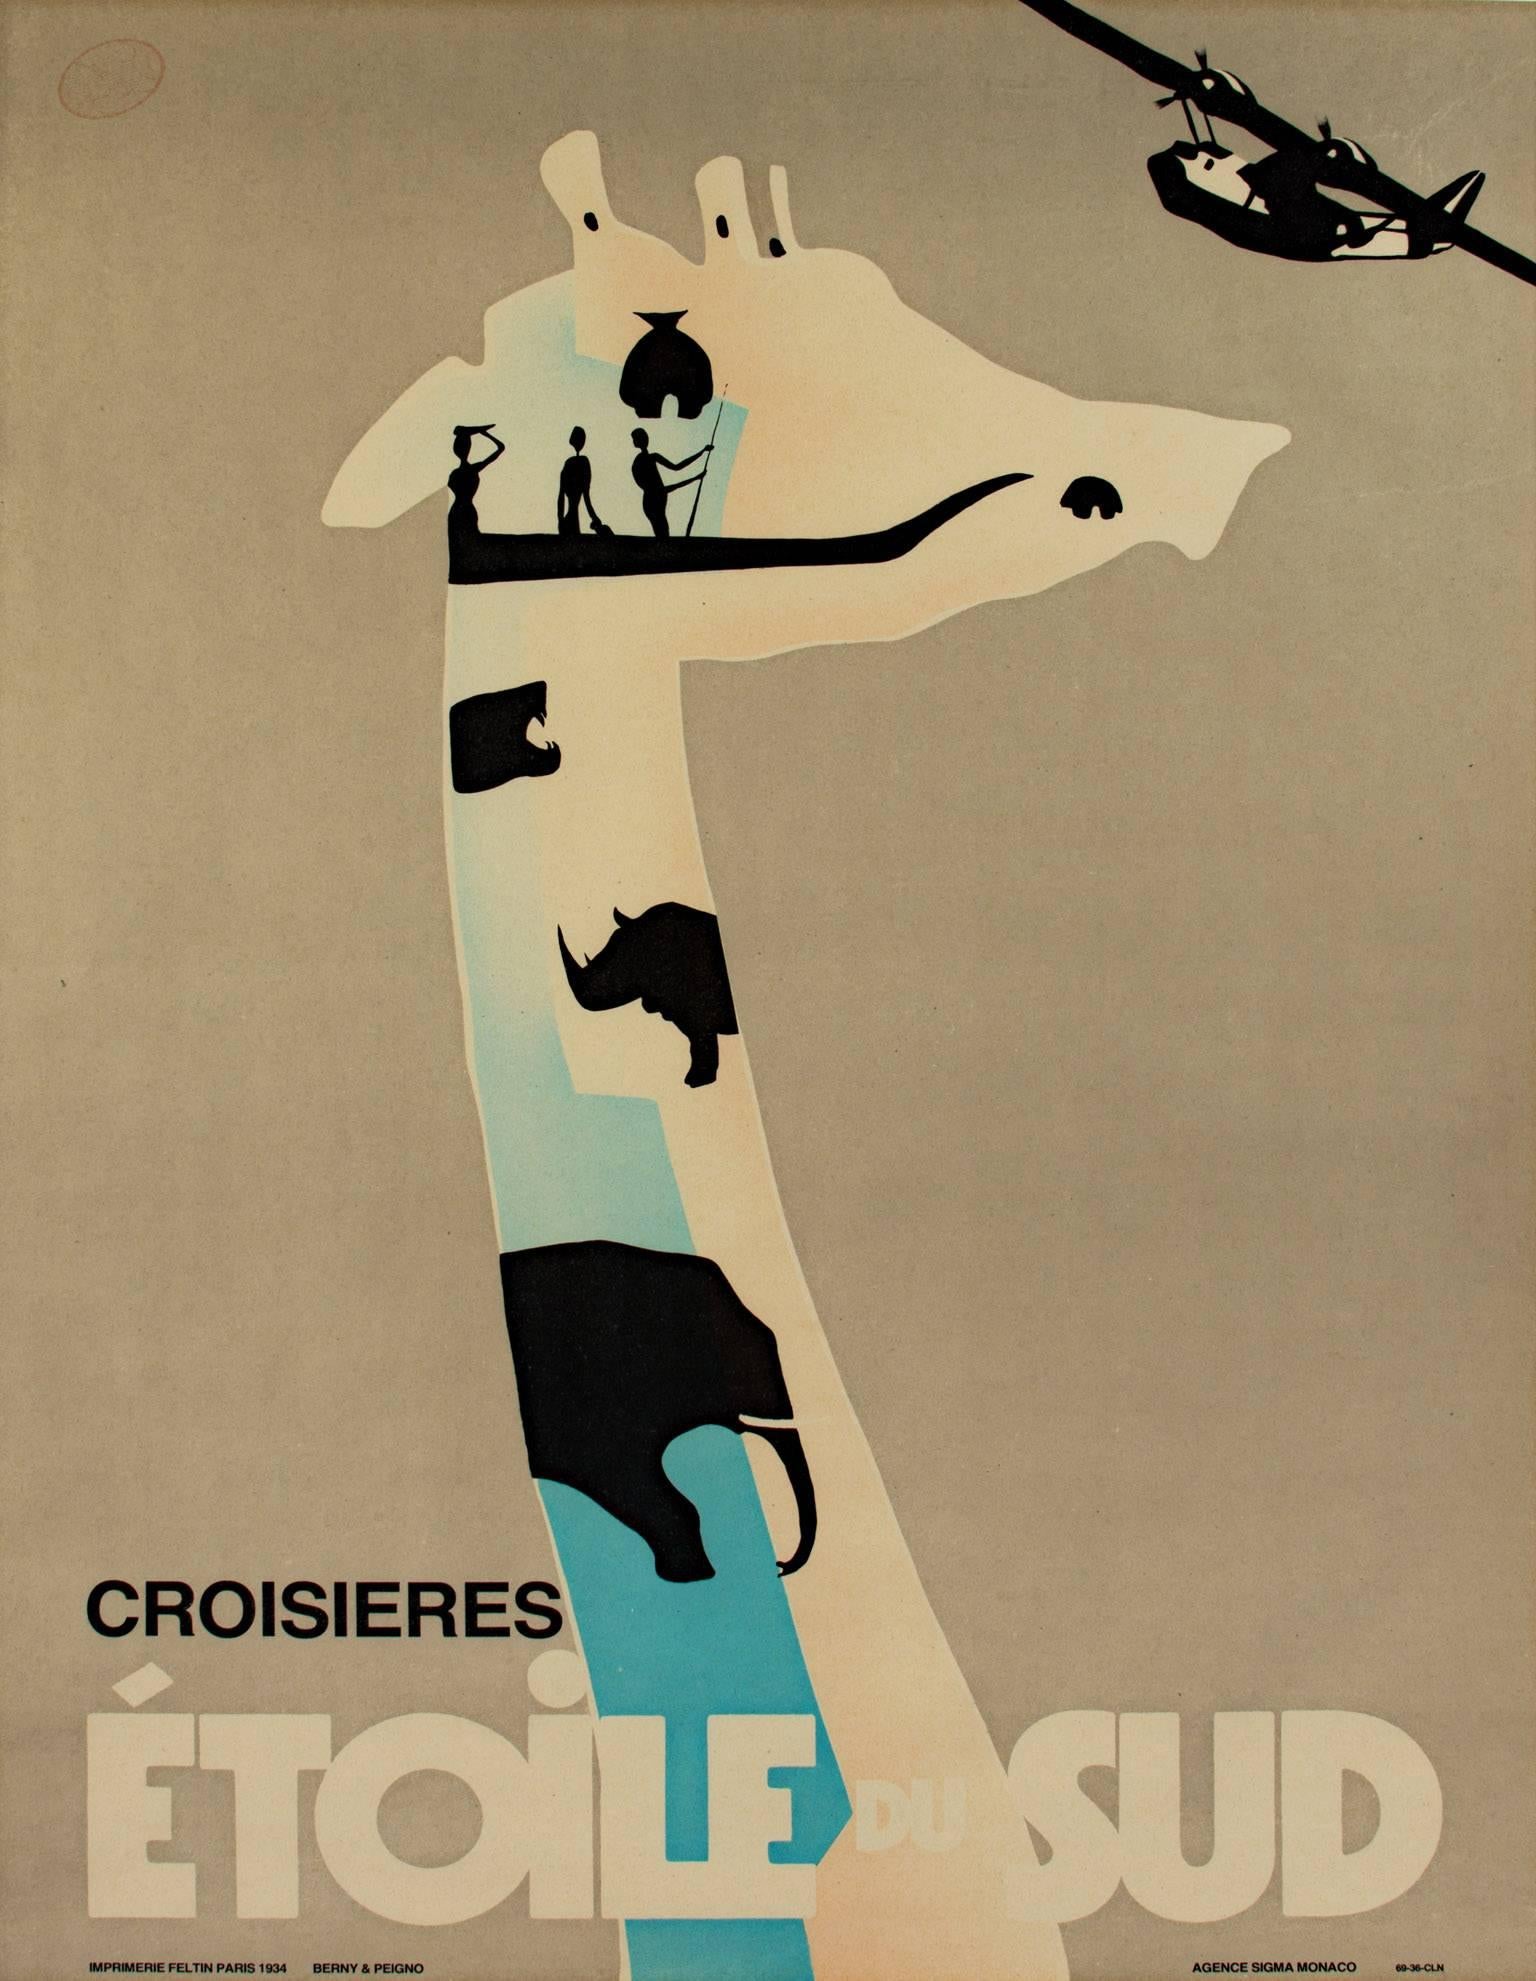 "Croisieres Etoile Du Sud" ; est une affiche lithographique originale de Berny Et Peignot représentant de multiples silhouettes d'animaux en bleu, beige et noir. 1934.

34.9375" x 25.9375" art
37.75" x 28.875 encadré

Cette image a été créée pour